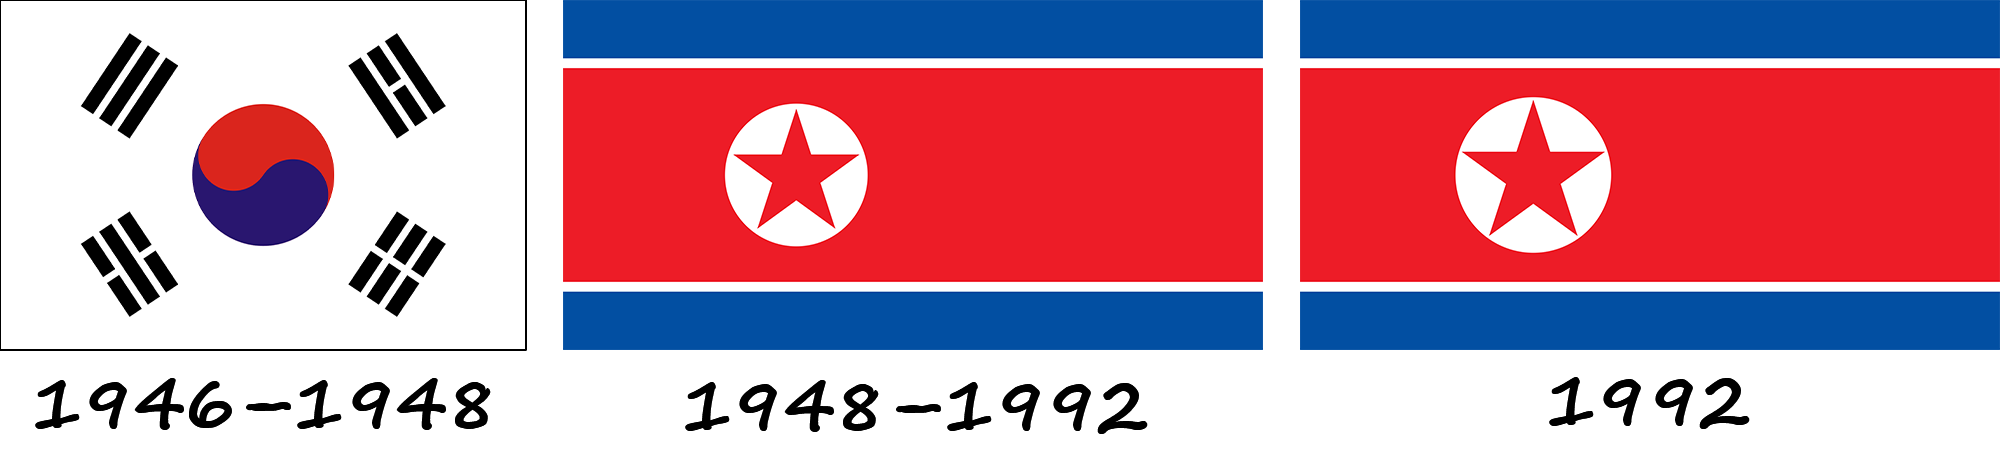 Historia de la bandera norcoreana